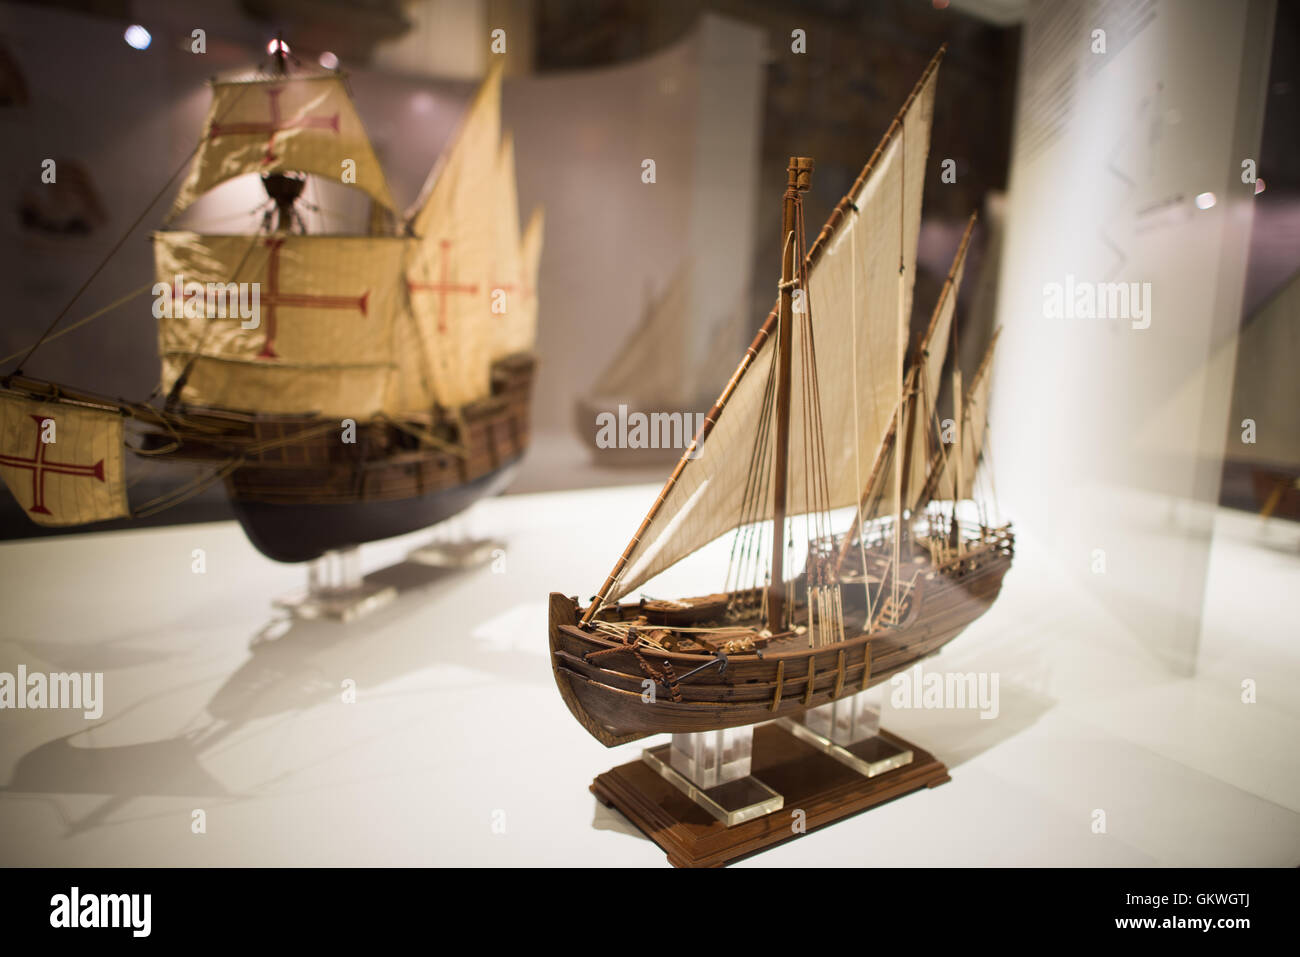 LISBONNE, Portugal — au premier plan est un modèle de 3 mâts Lateen Caravel rigée de la fin du siècle 15th. En arrière-plan, à gauche, est un modèle de la Caravelle carrée-Rgged du début du 16th siècle. Le Museu de Marinha (Musée maritime de la Marine) se concentre sur l'histoire maritime portugaise. Il présente des expositions sur l'âge de la découverte au Portugal, la marine portugaise, la navigation commerciale et récréative et, dans une grande annexe, des barges et des hydravions. Situé dans le quartier Belem de Lisbonne, il occupe, en partie, une aile du monastère Jerónimos. Son entrée est par une chapelle qu'il Banque D'Images